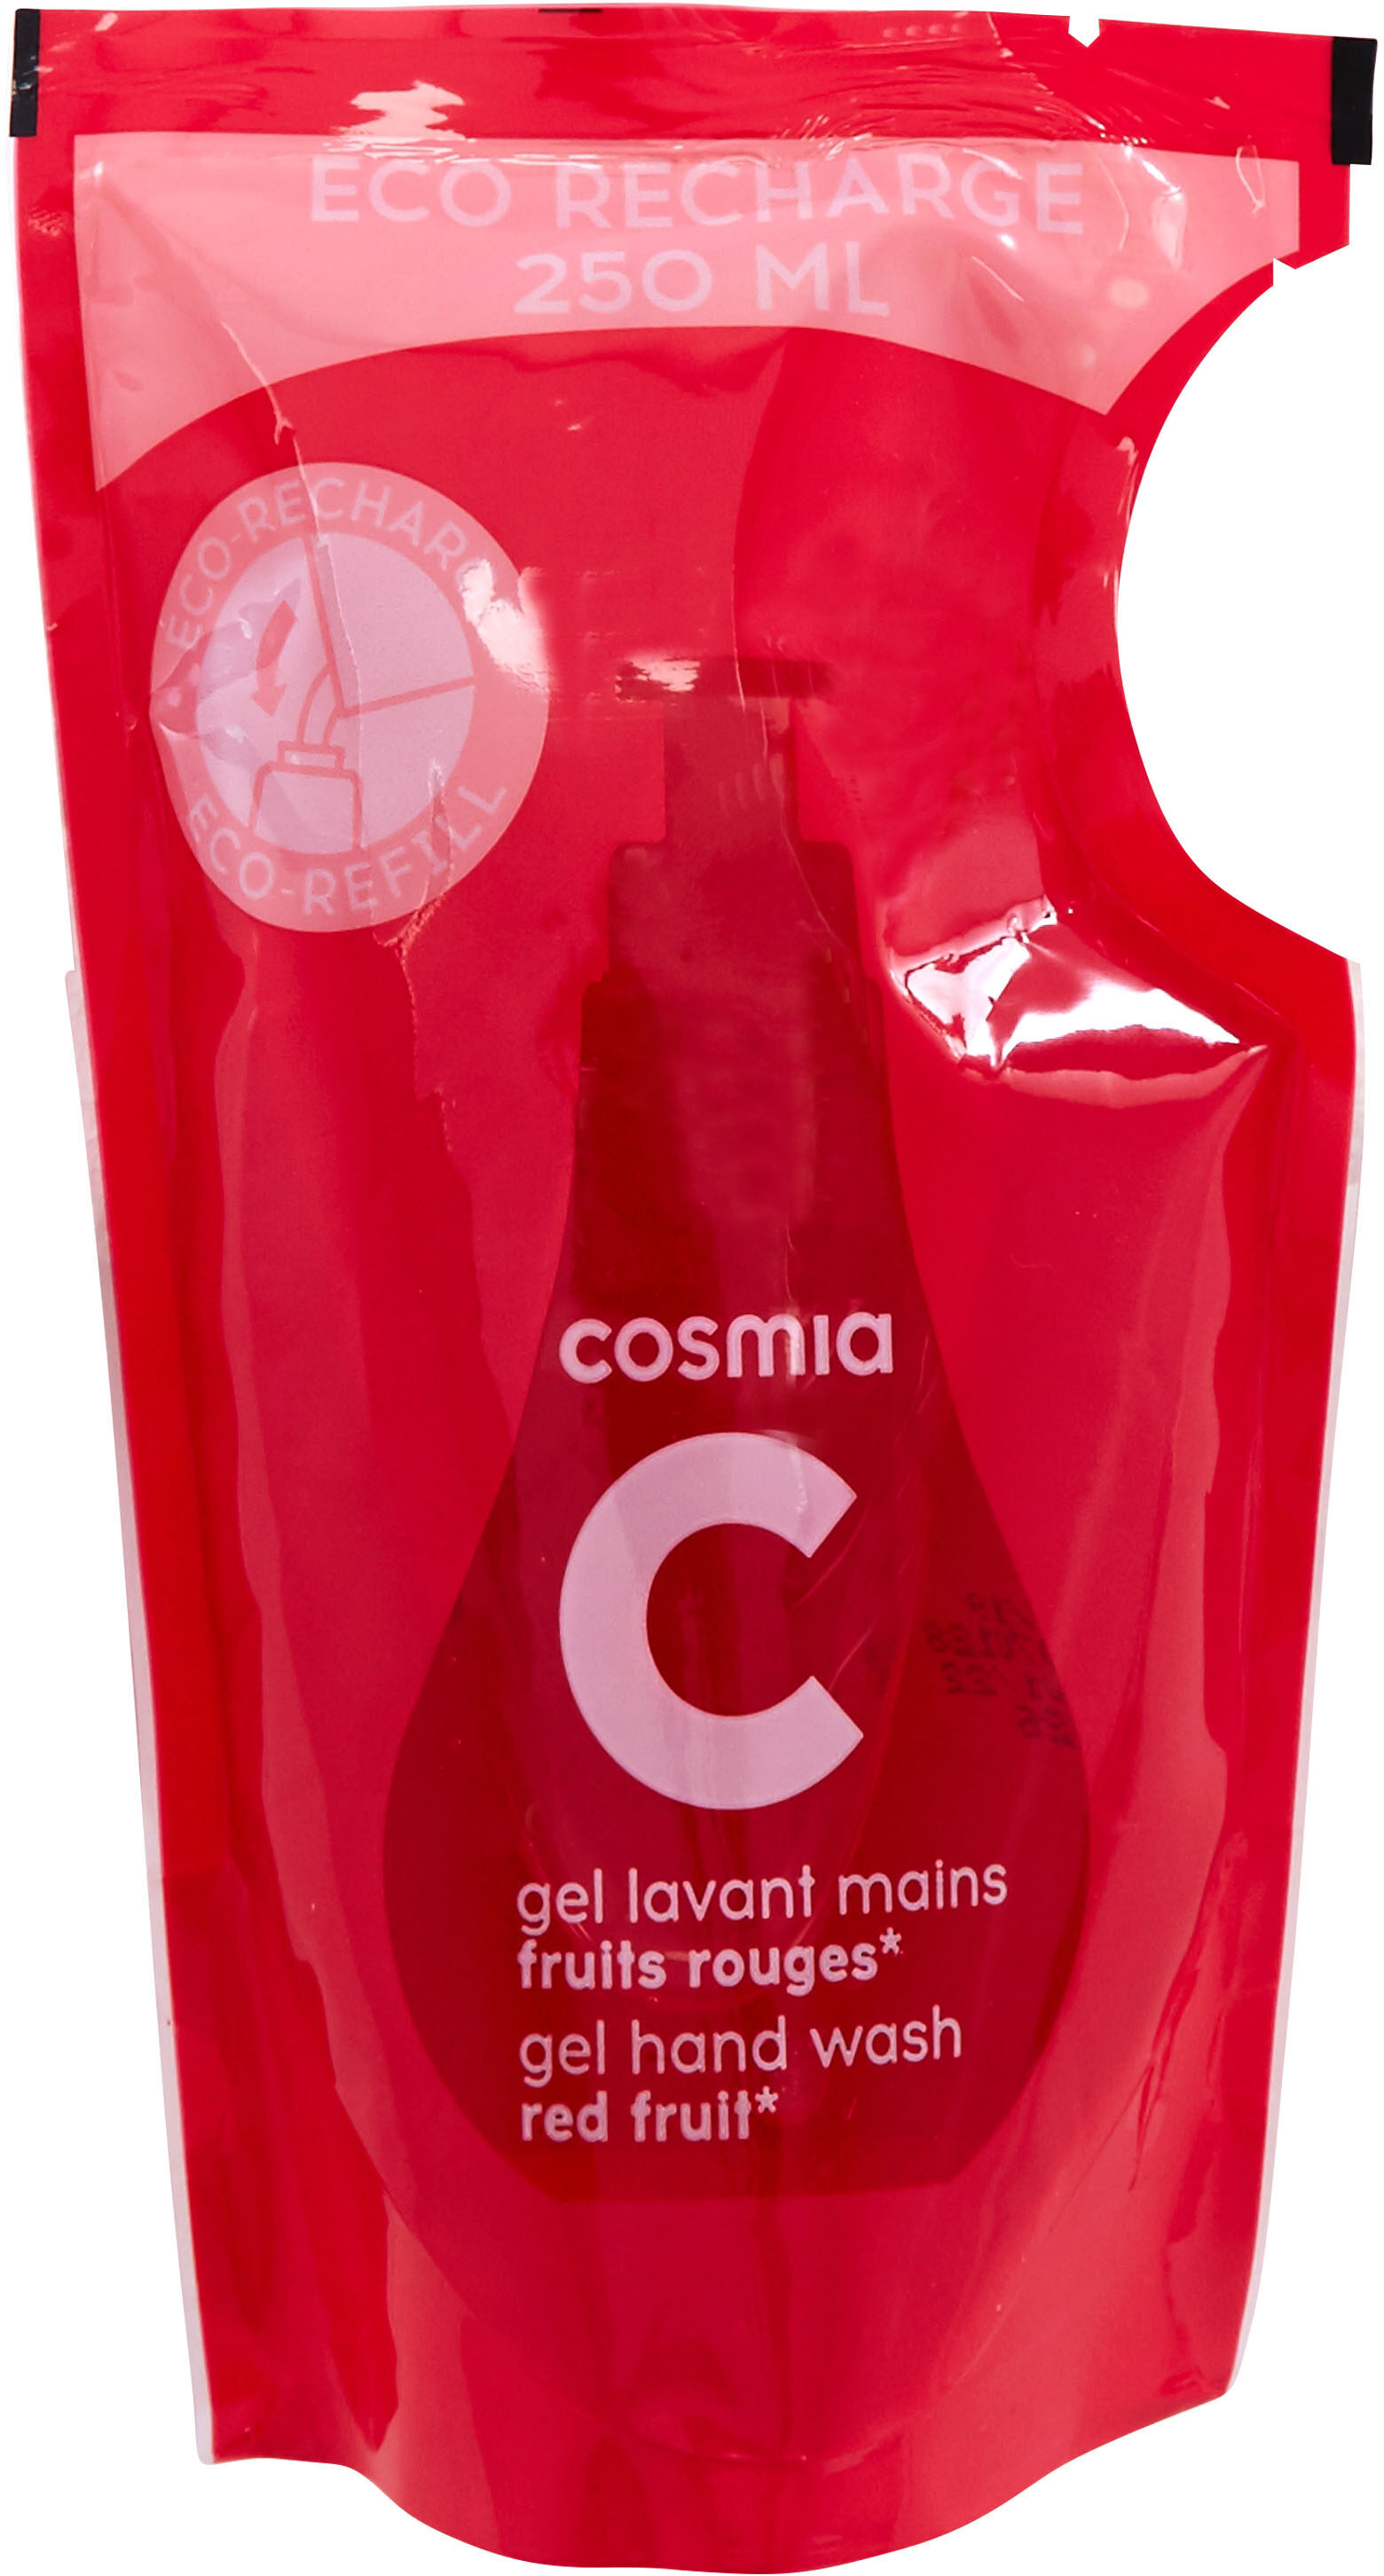 Cosmia - éco-recharge gel lavant mains - parfum fruits rouges* - tous types de peaux - 250ml - Produto - fr